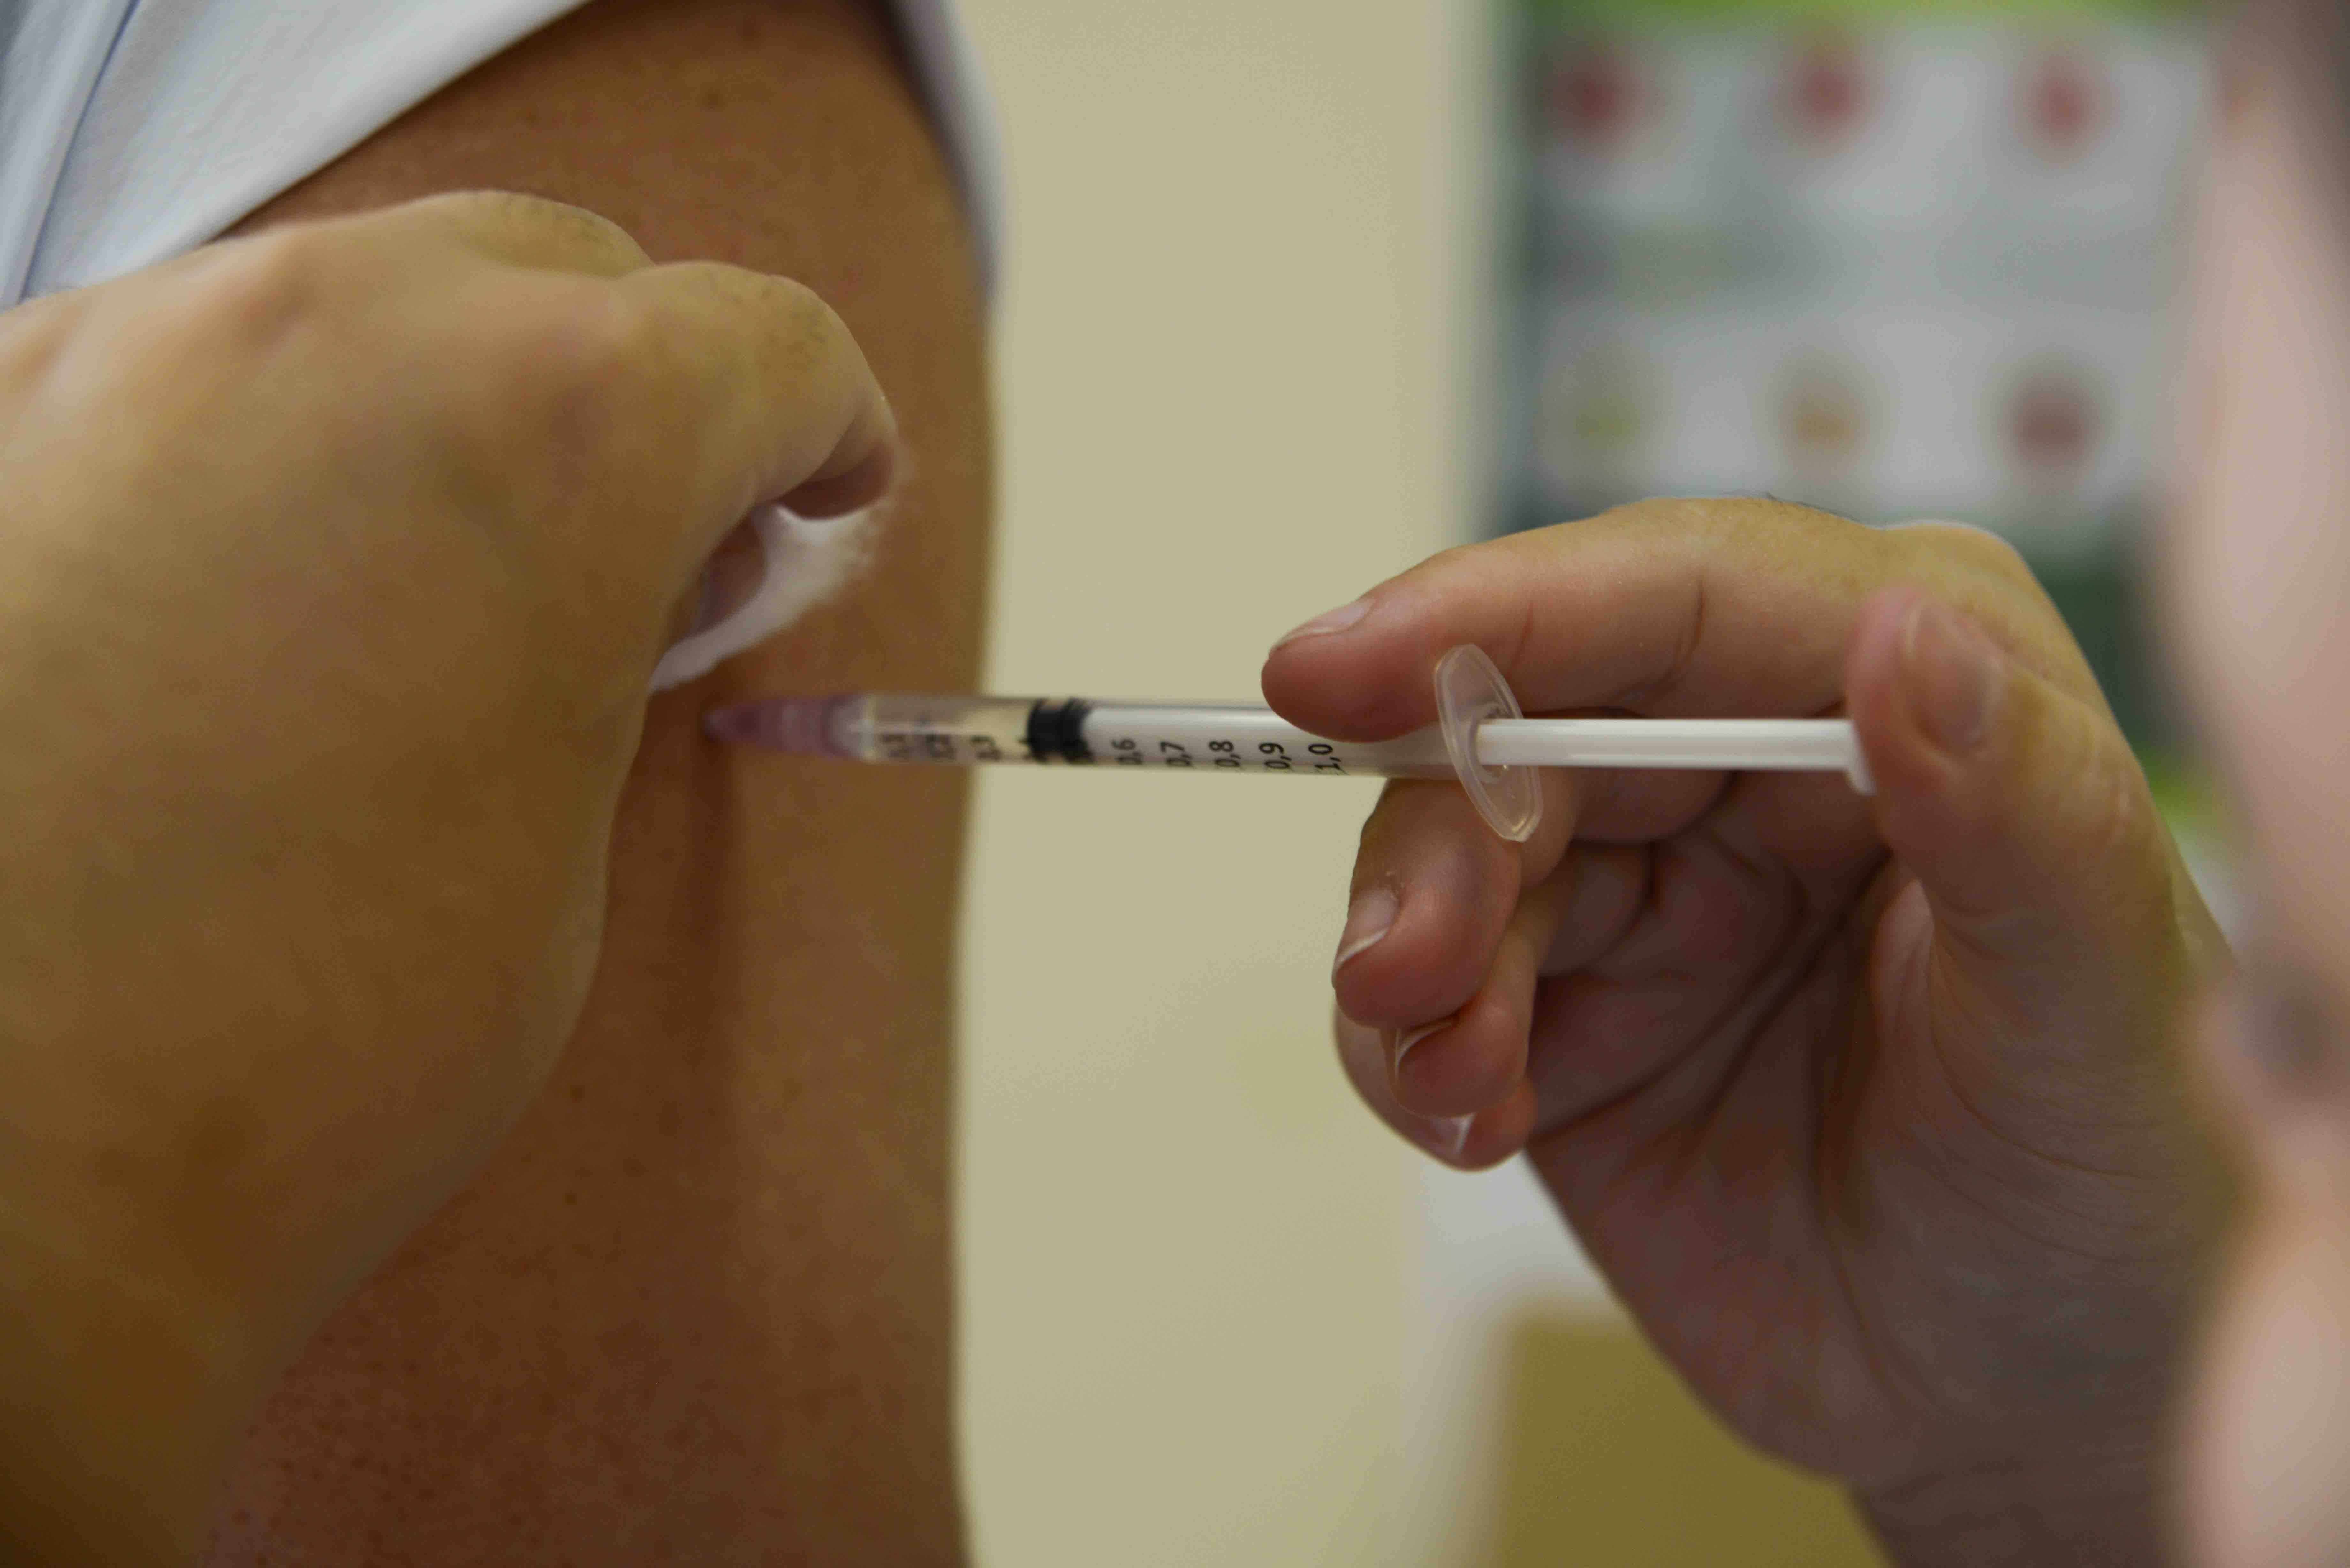 Clínica particular denunciada por aplicar vacinas vencidas em pacientes é investigada em SC